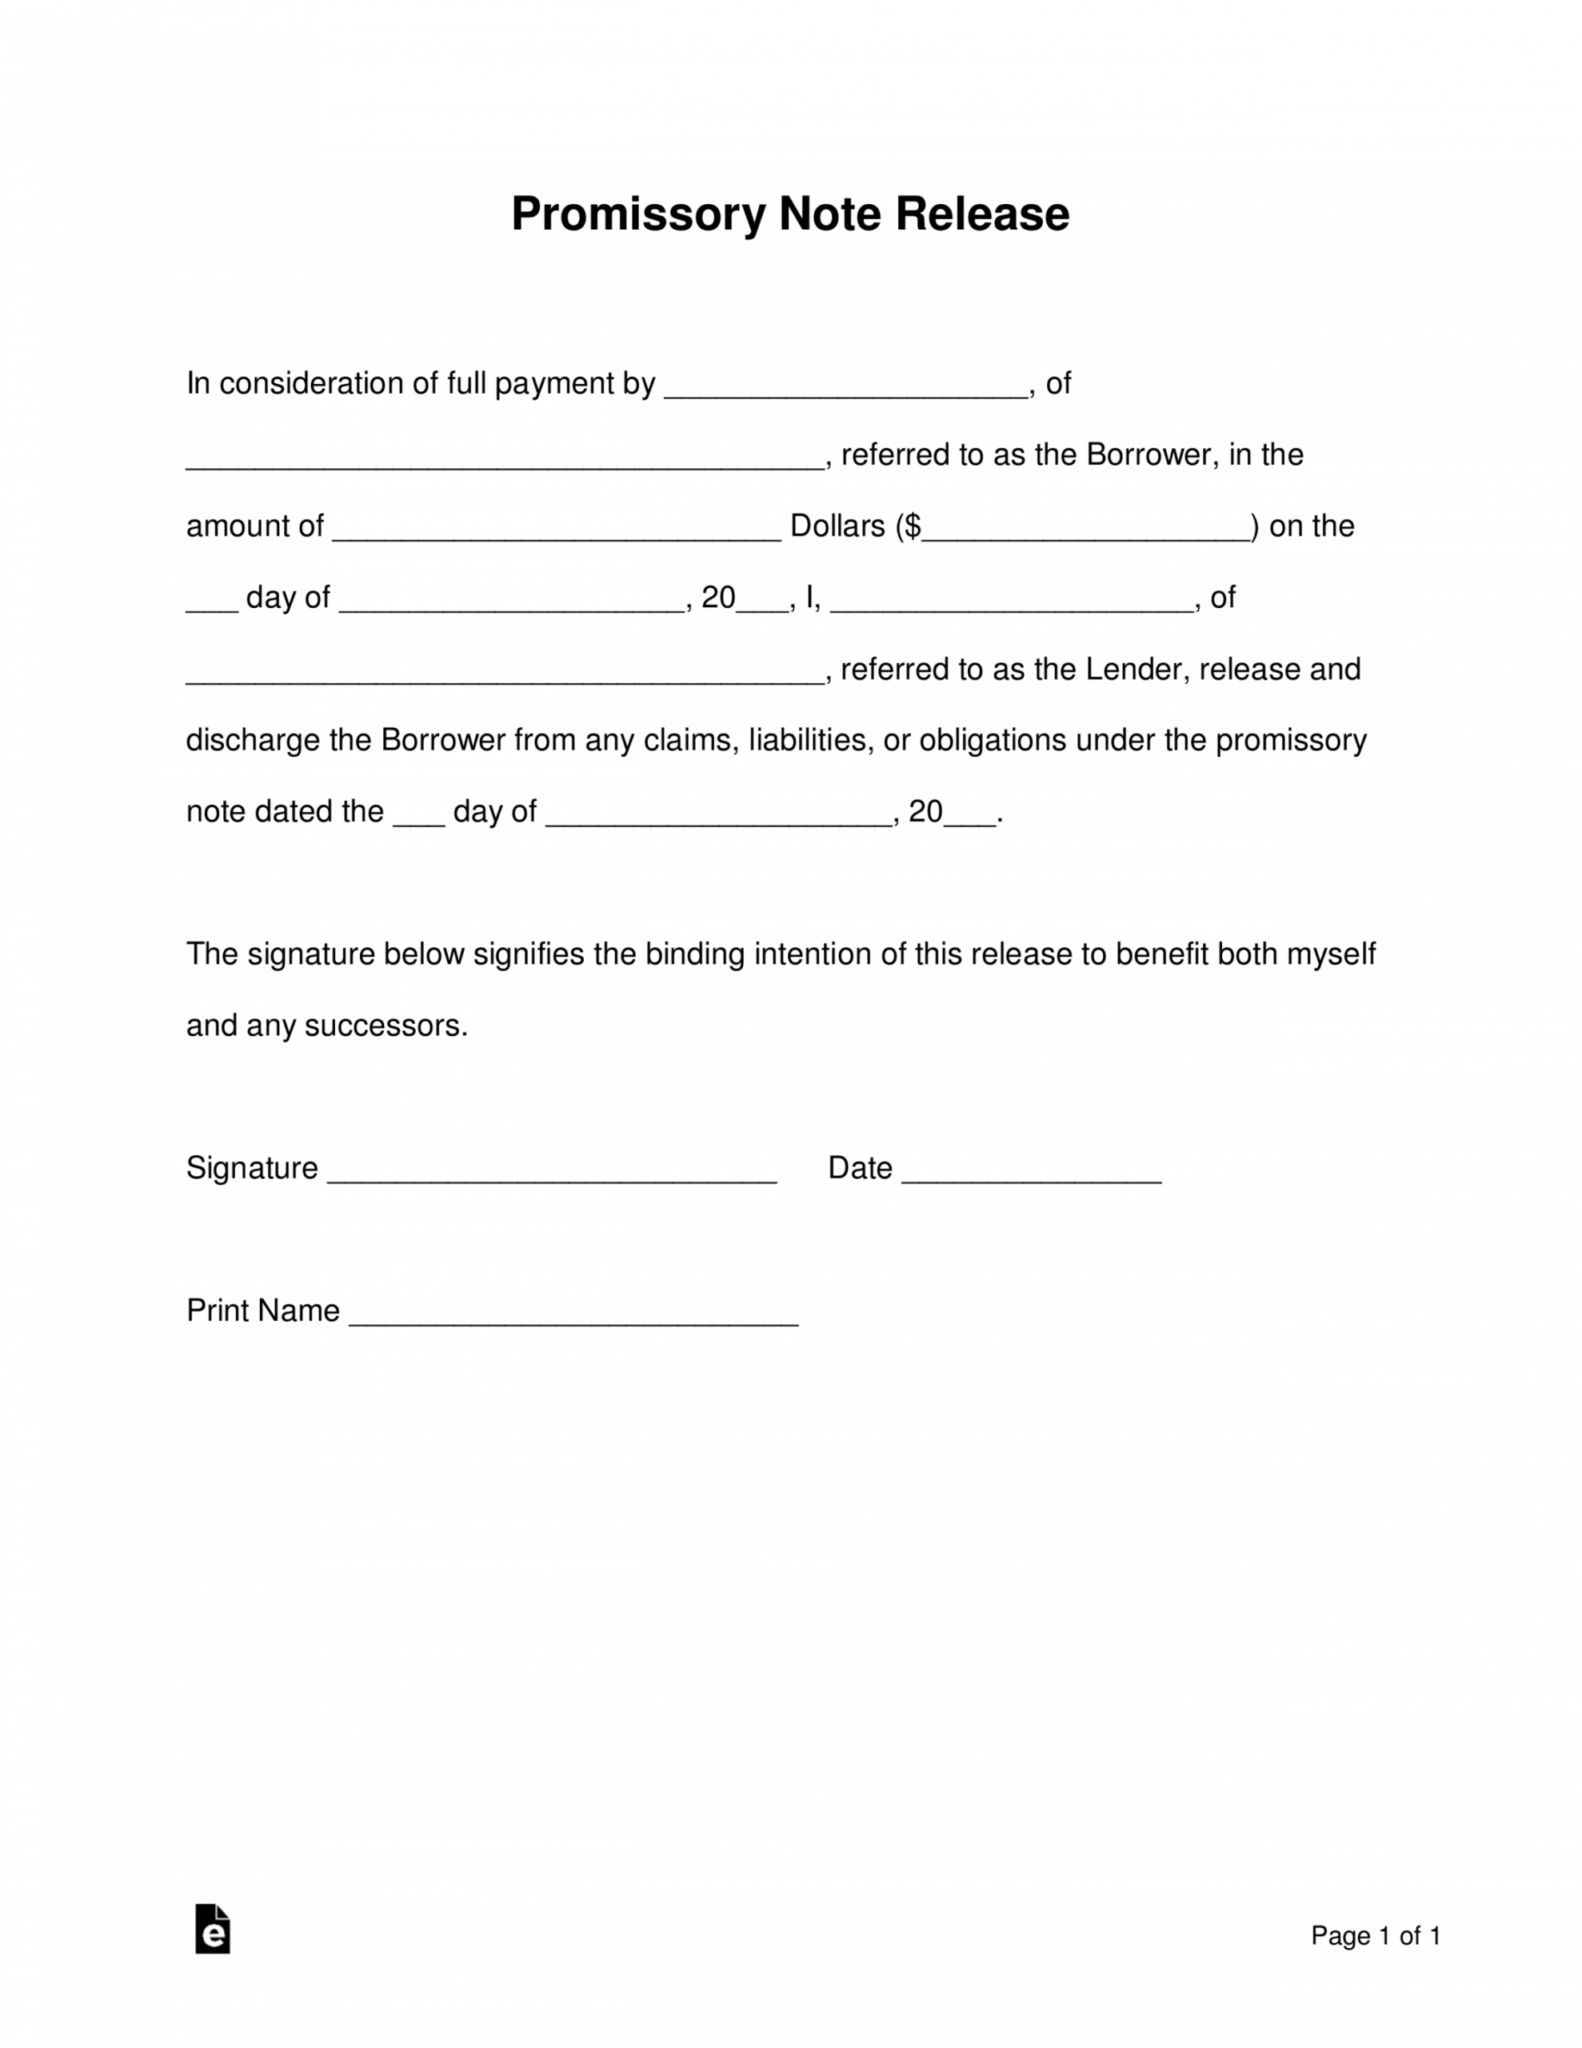 Sample Free Promissory Note Loan Release Form Word Pdf Release Of Promissory Note Template 6546